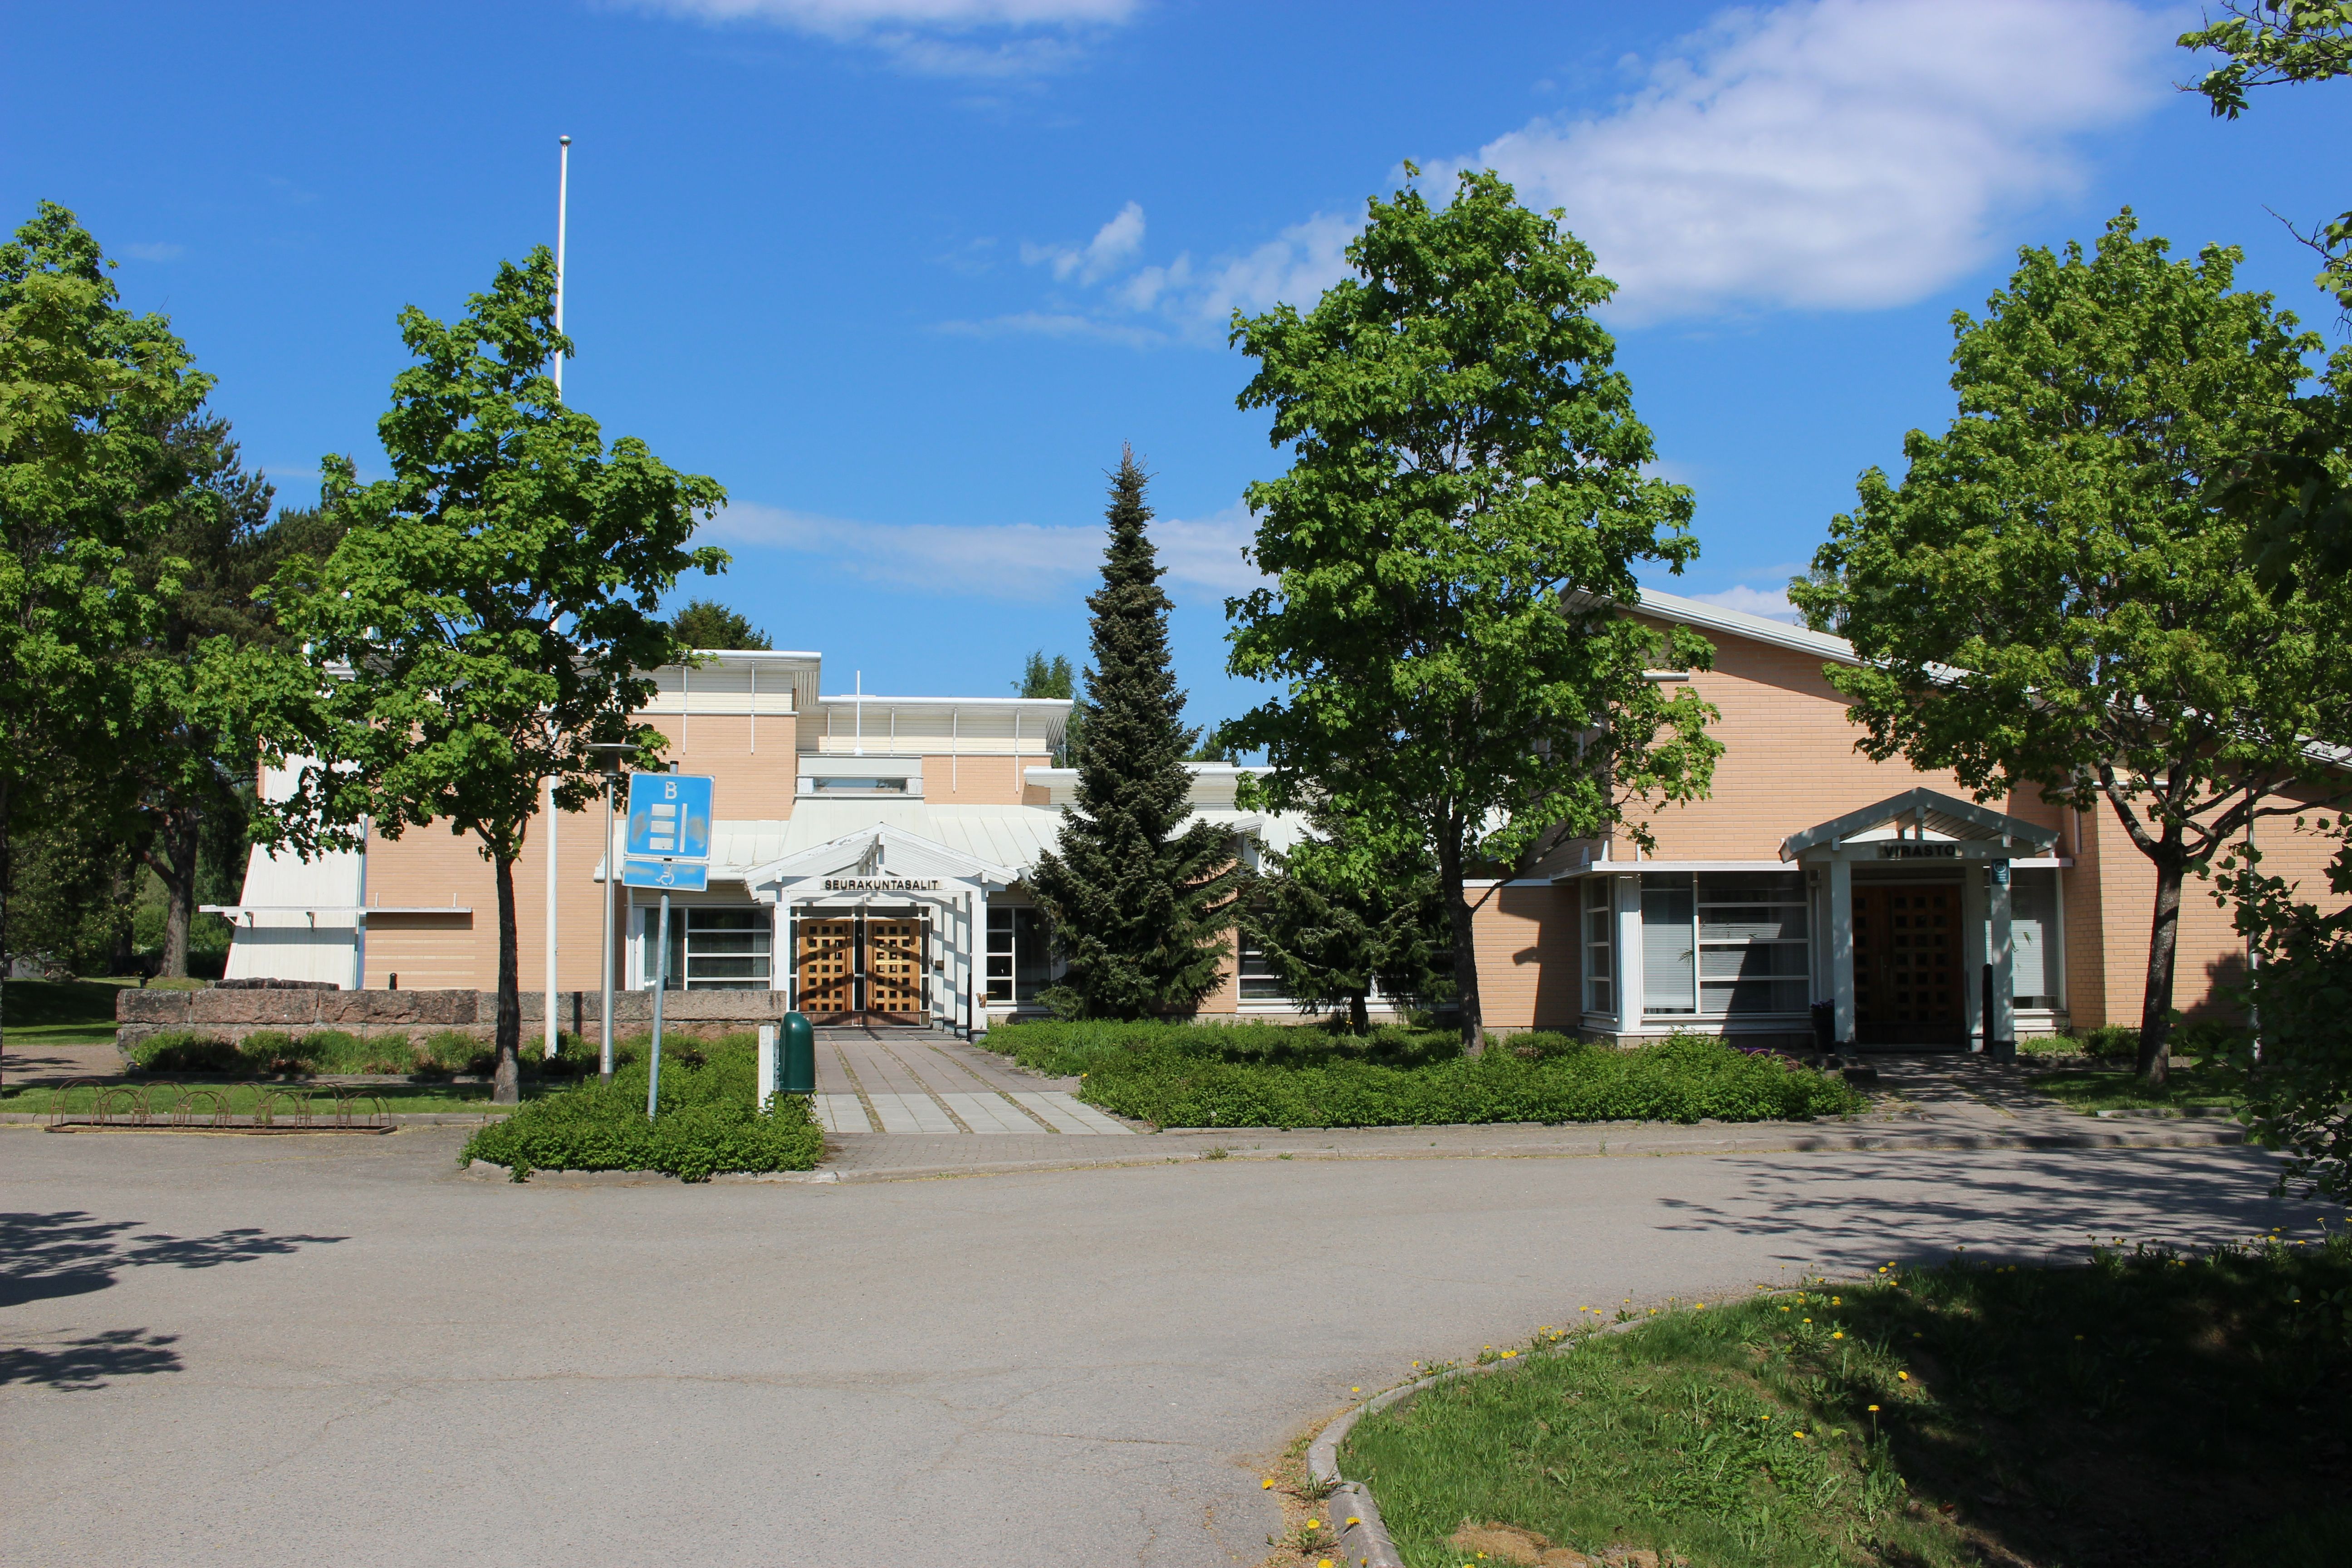 Ulkokuva seurakuntakeskus Tapulista, näkymä parkkipaikalta salien ja toimistojen oville